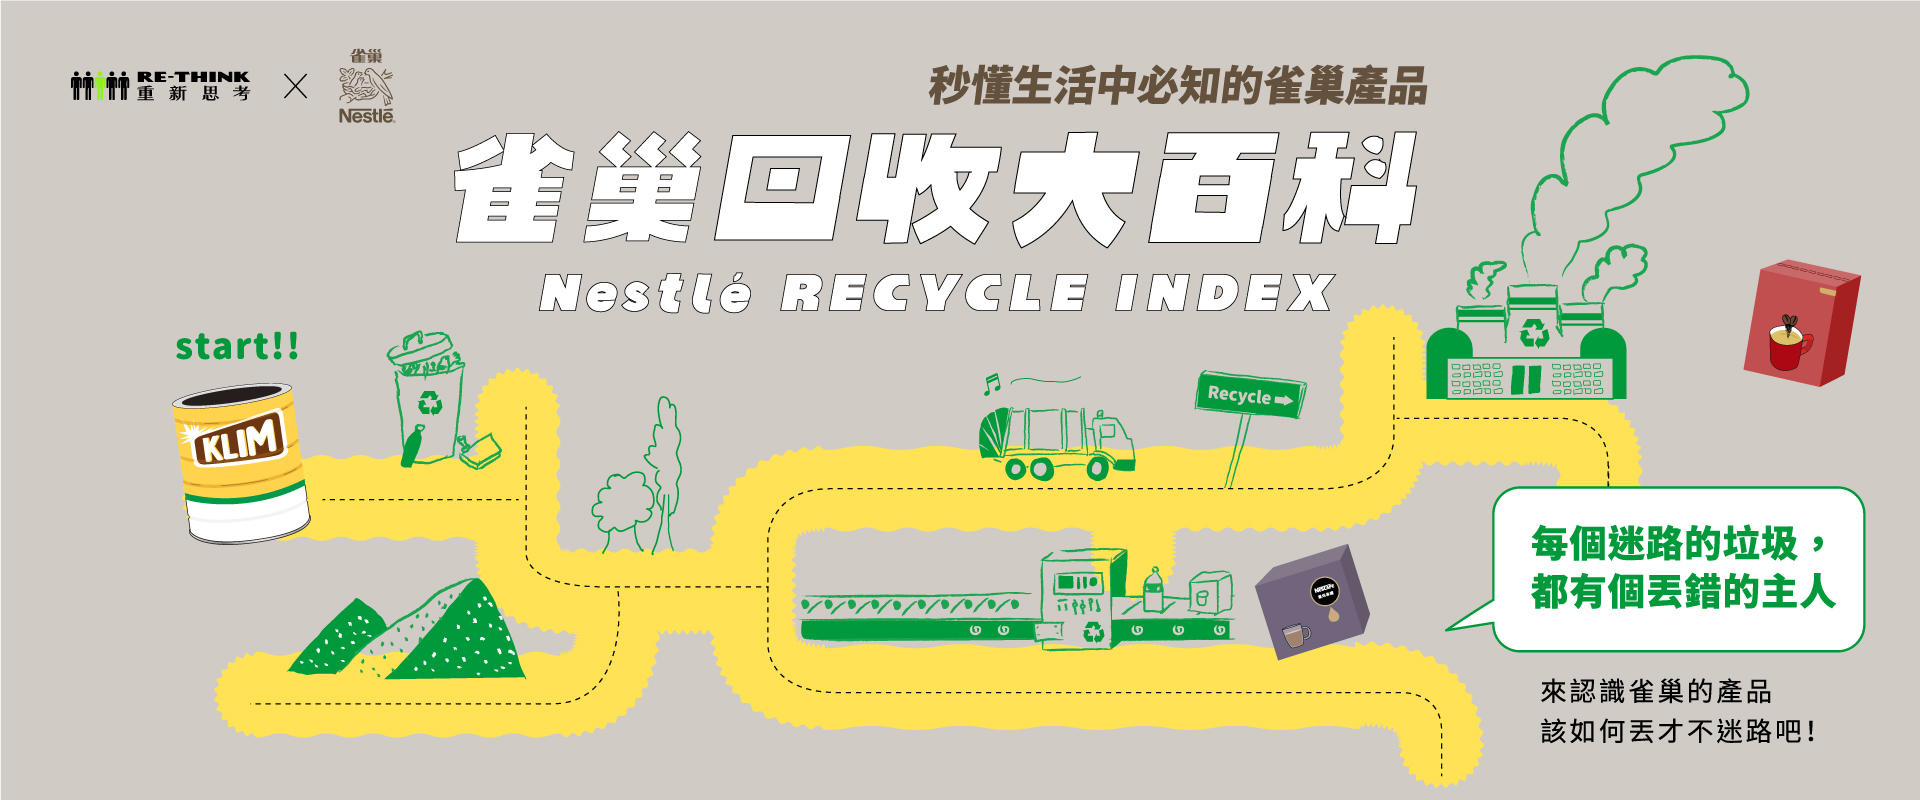 回收大百科：支持循環經濟，讓資源再利用 | 雀巢台灣